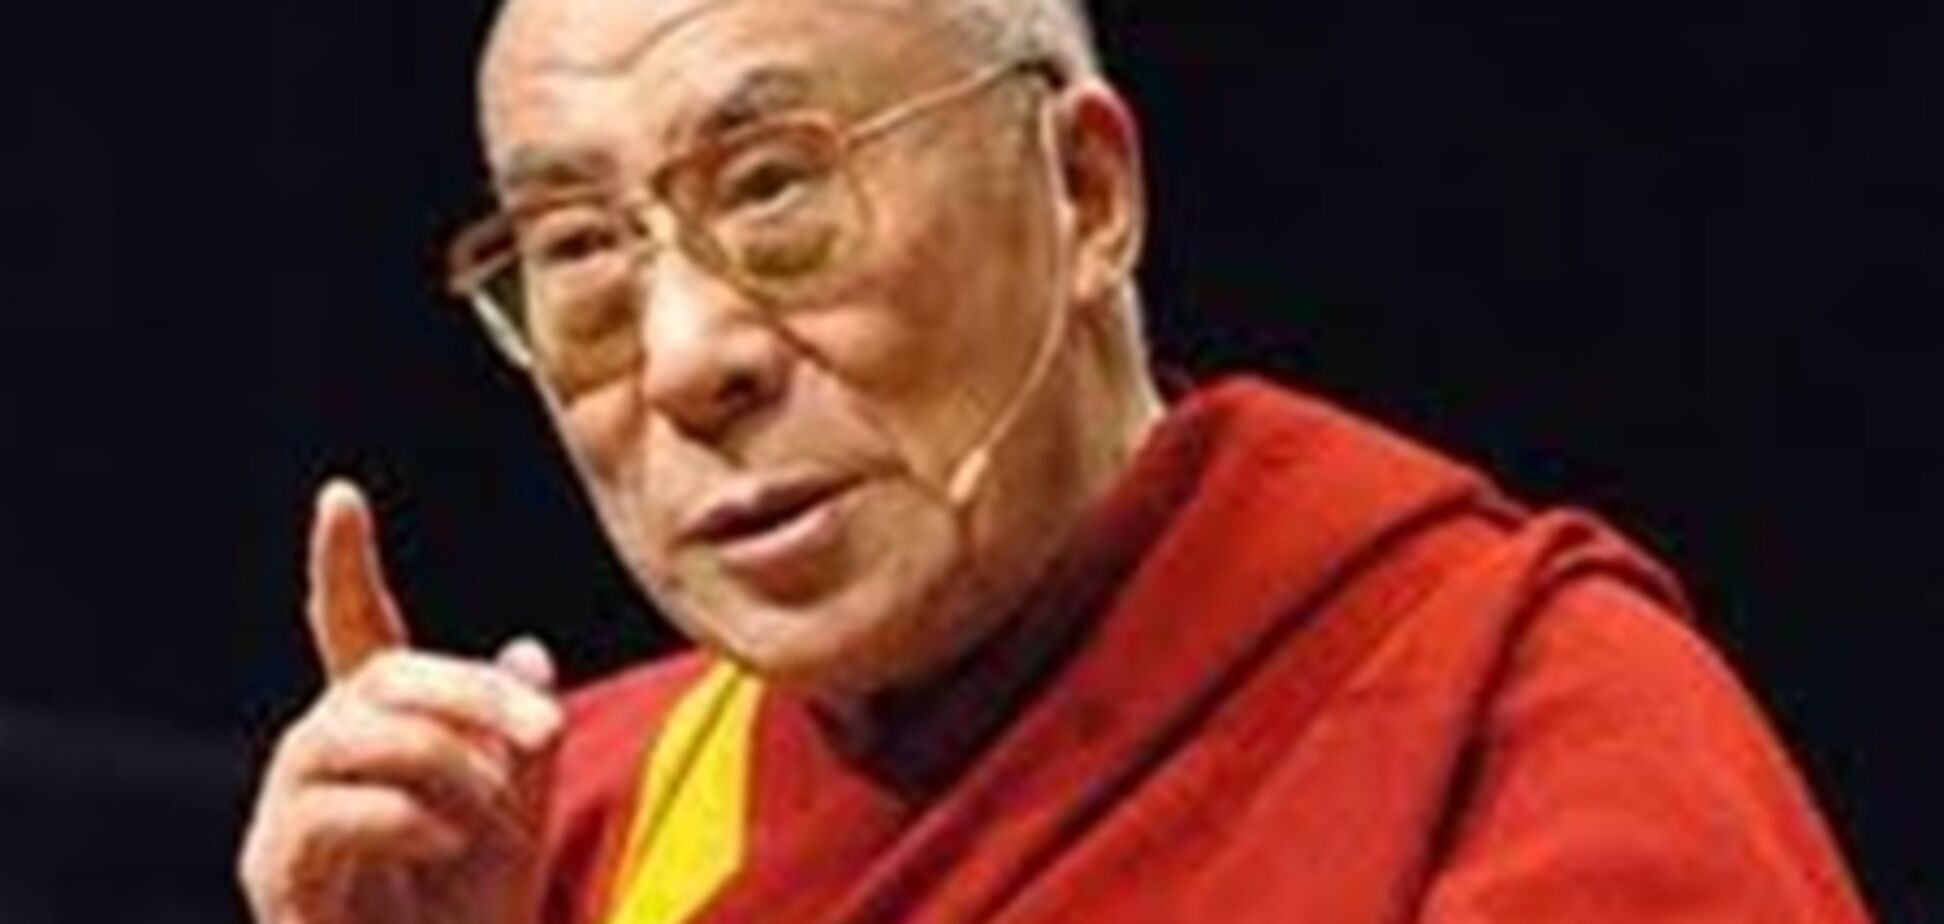 Далай-лама висловив стурбованість станом прав людини в Україні